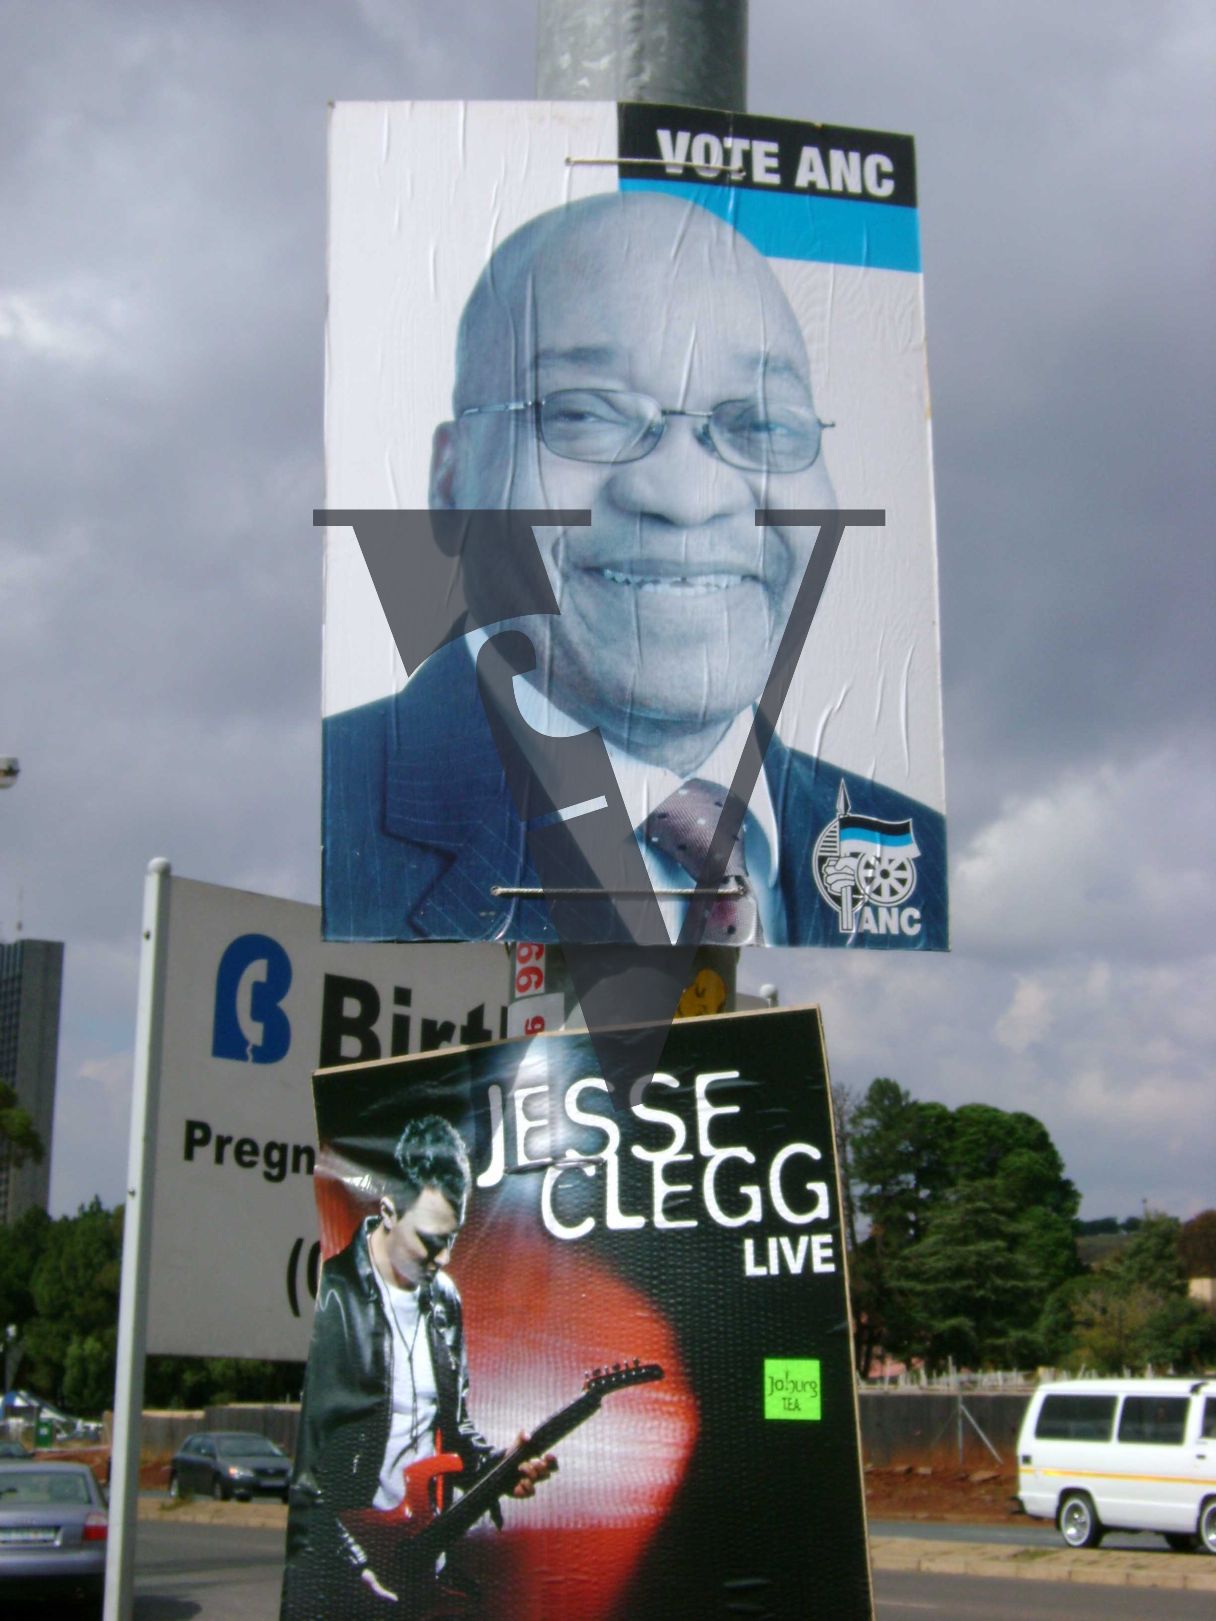 Johannesburg, Vote ANC / ZUMA poster, Jesse Clegg Live.